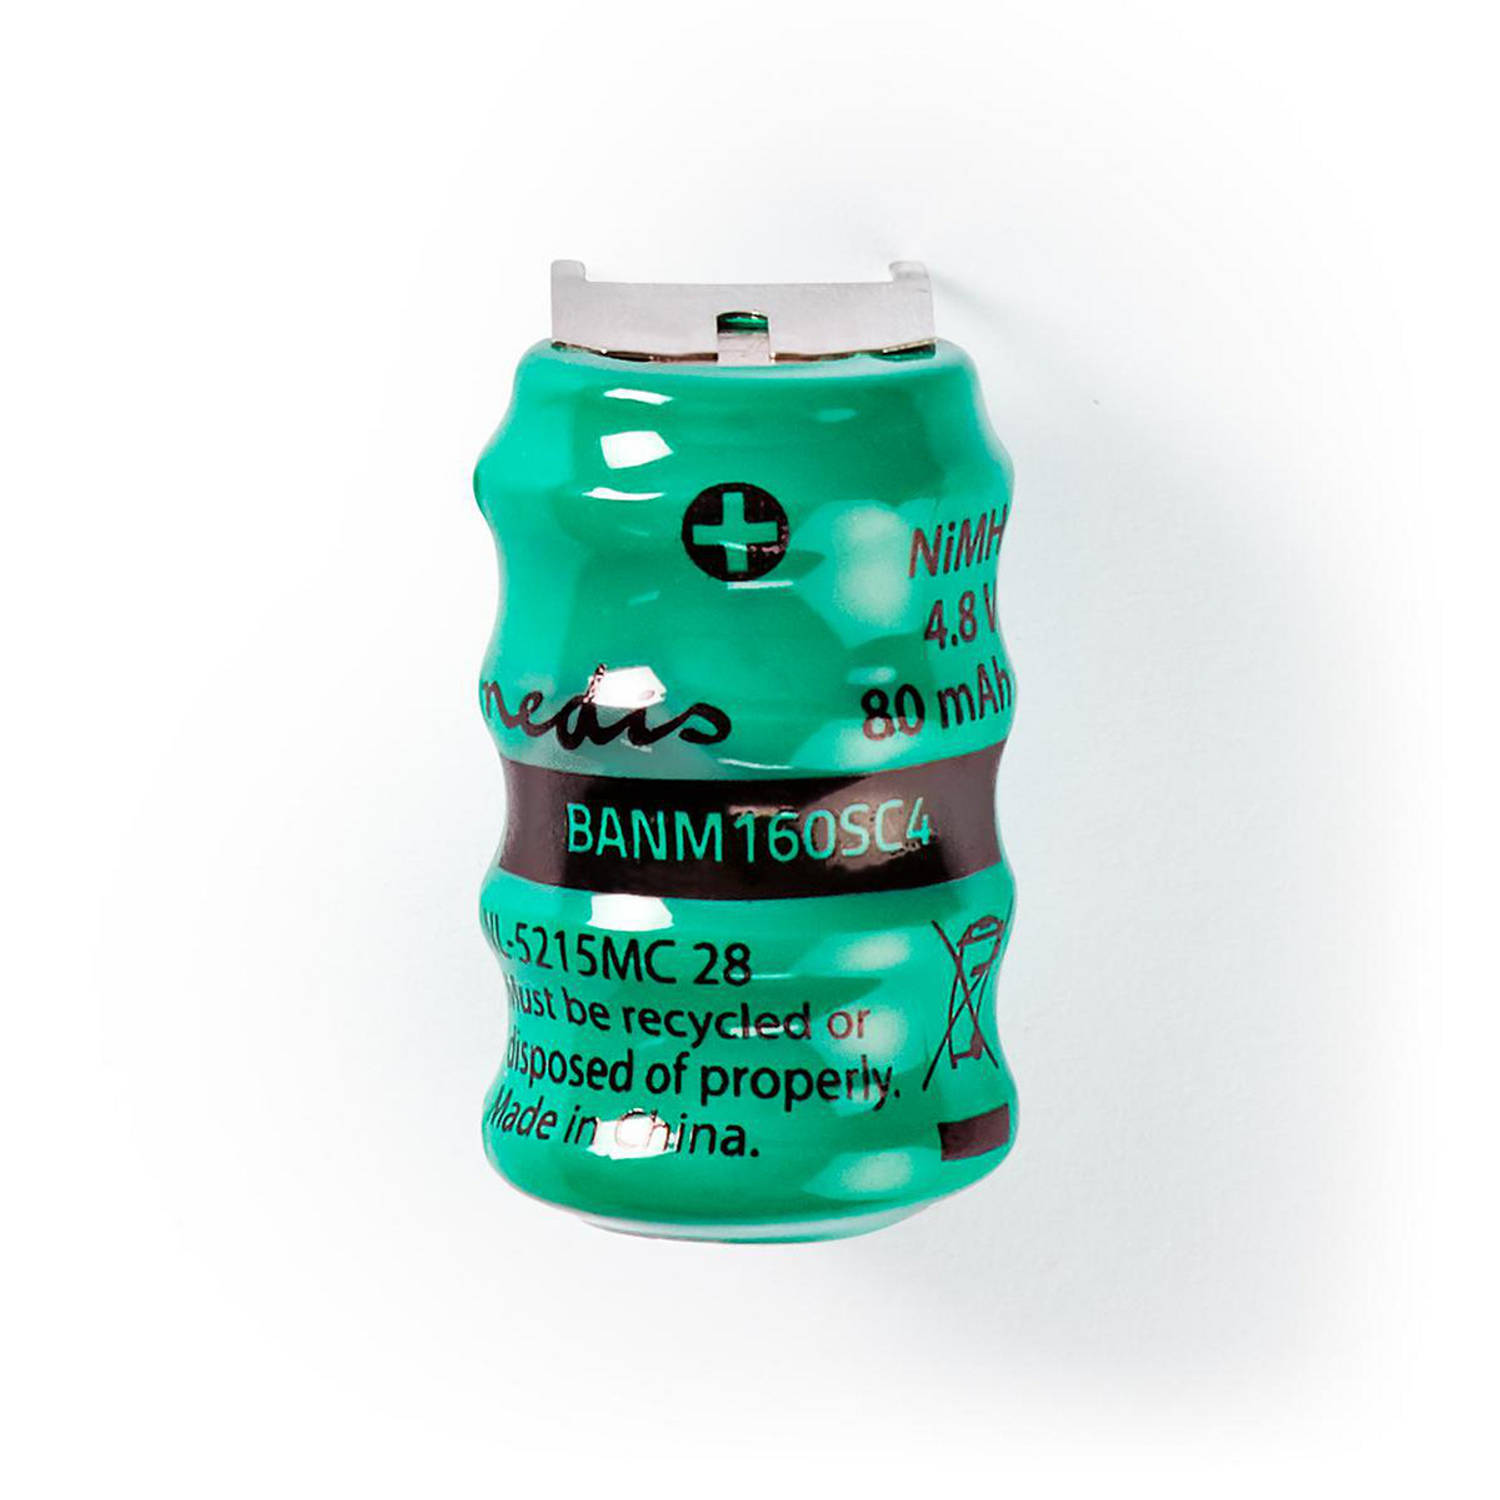 Nedis Oplaadbare NiMH-Batterij - BANM160SC4 - Groen